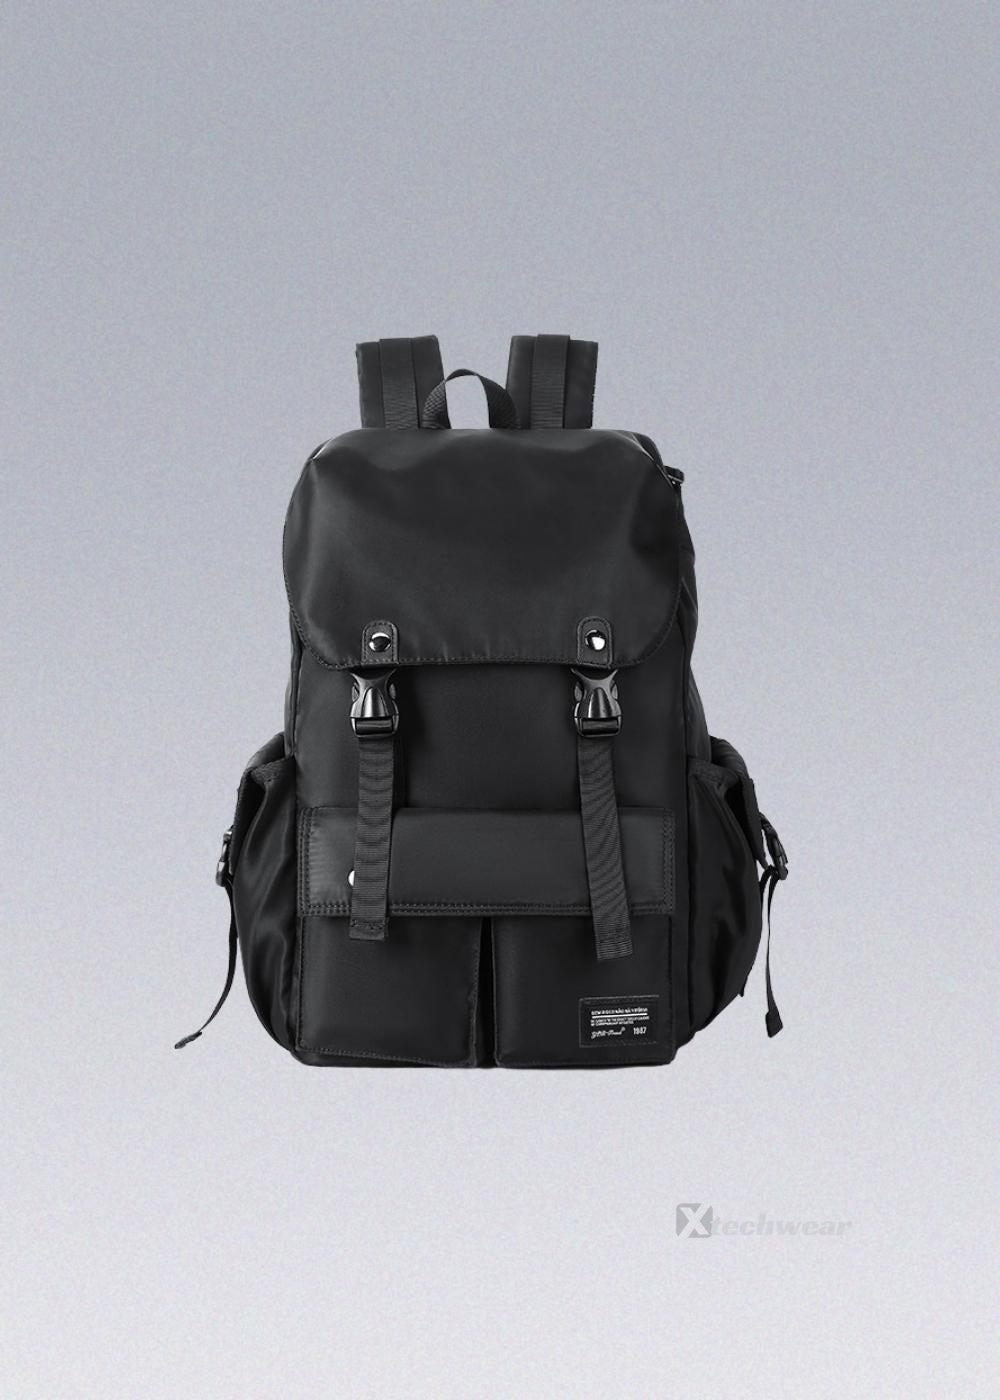 Leisure Techwear Backpack - Shop #1 Techwear Bags - X